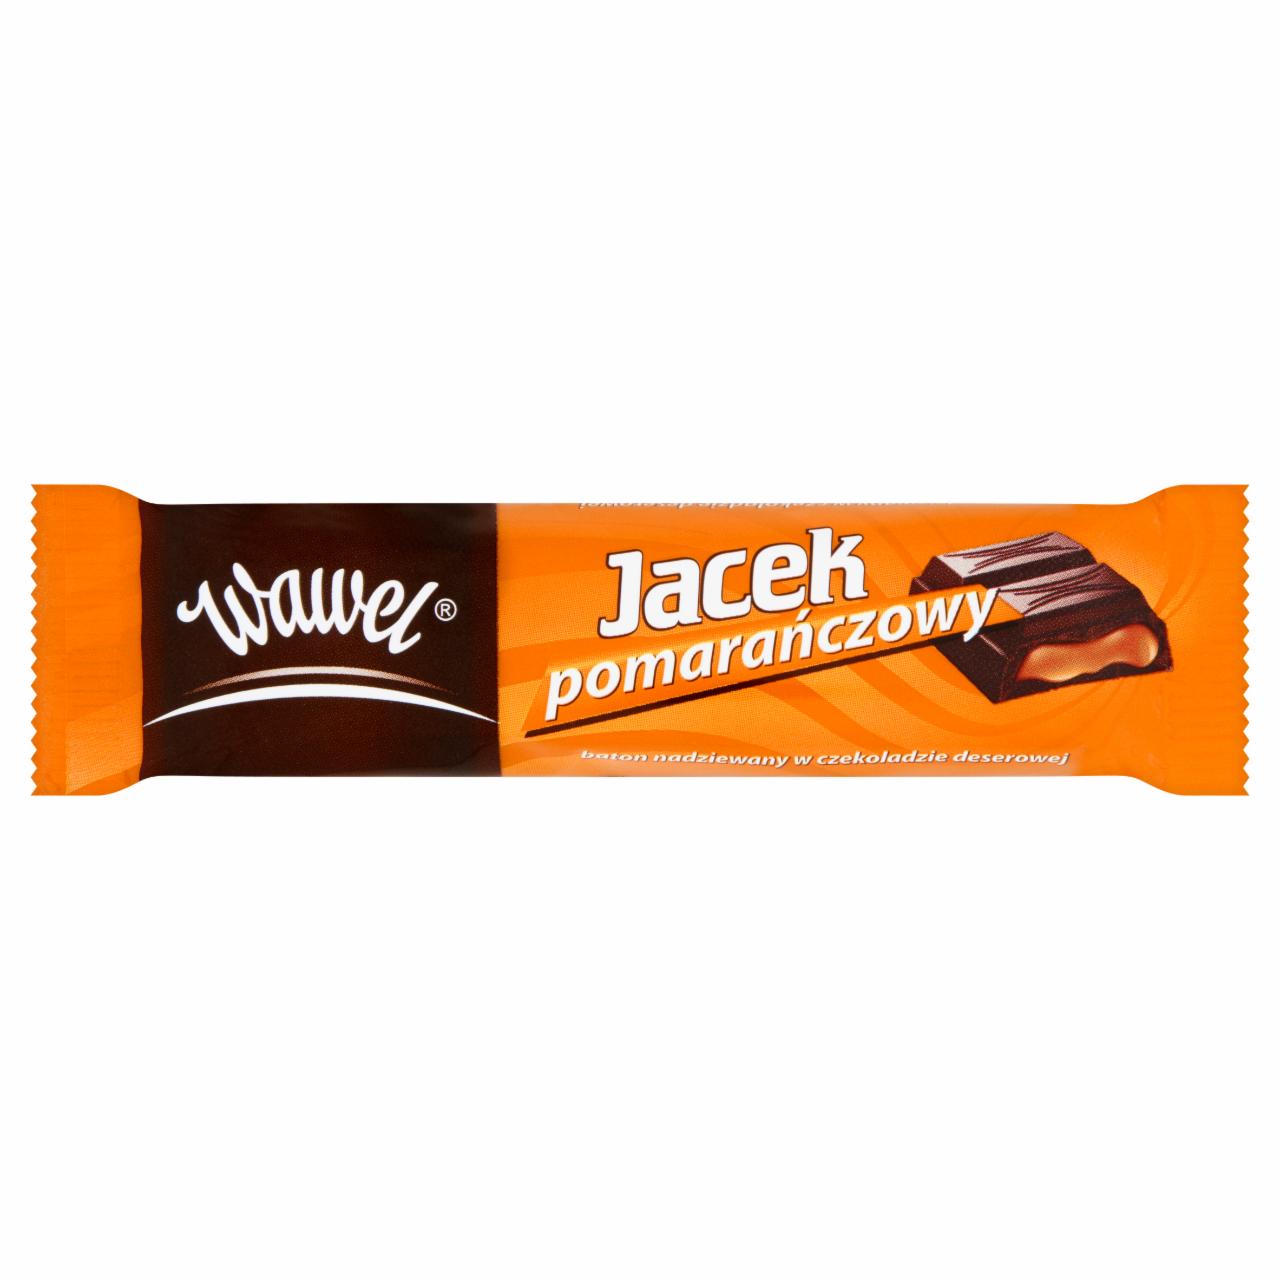 Zdjęcia - Wawel Jacek pomarańczowy Baton nadziewany w czekoladzie deserowej 42 g